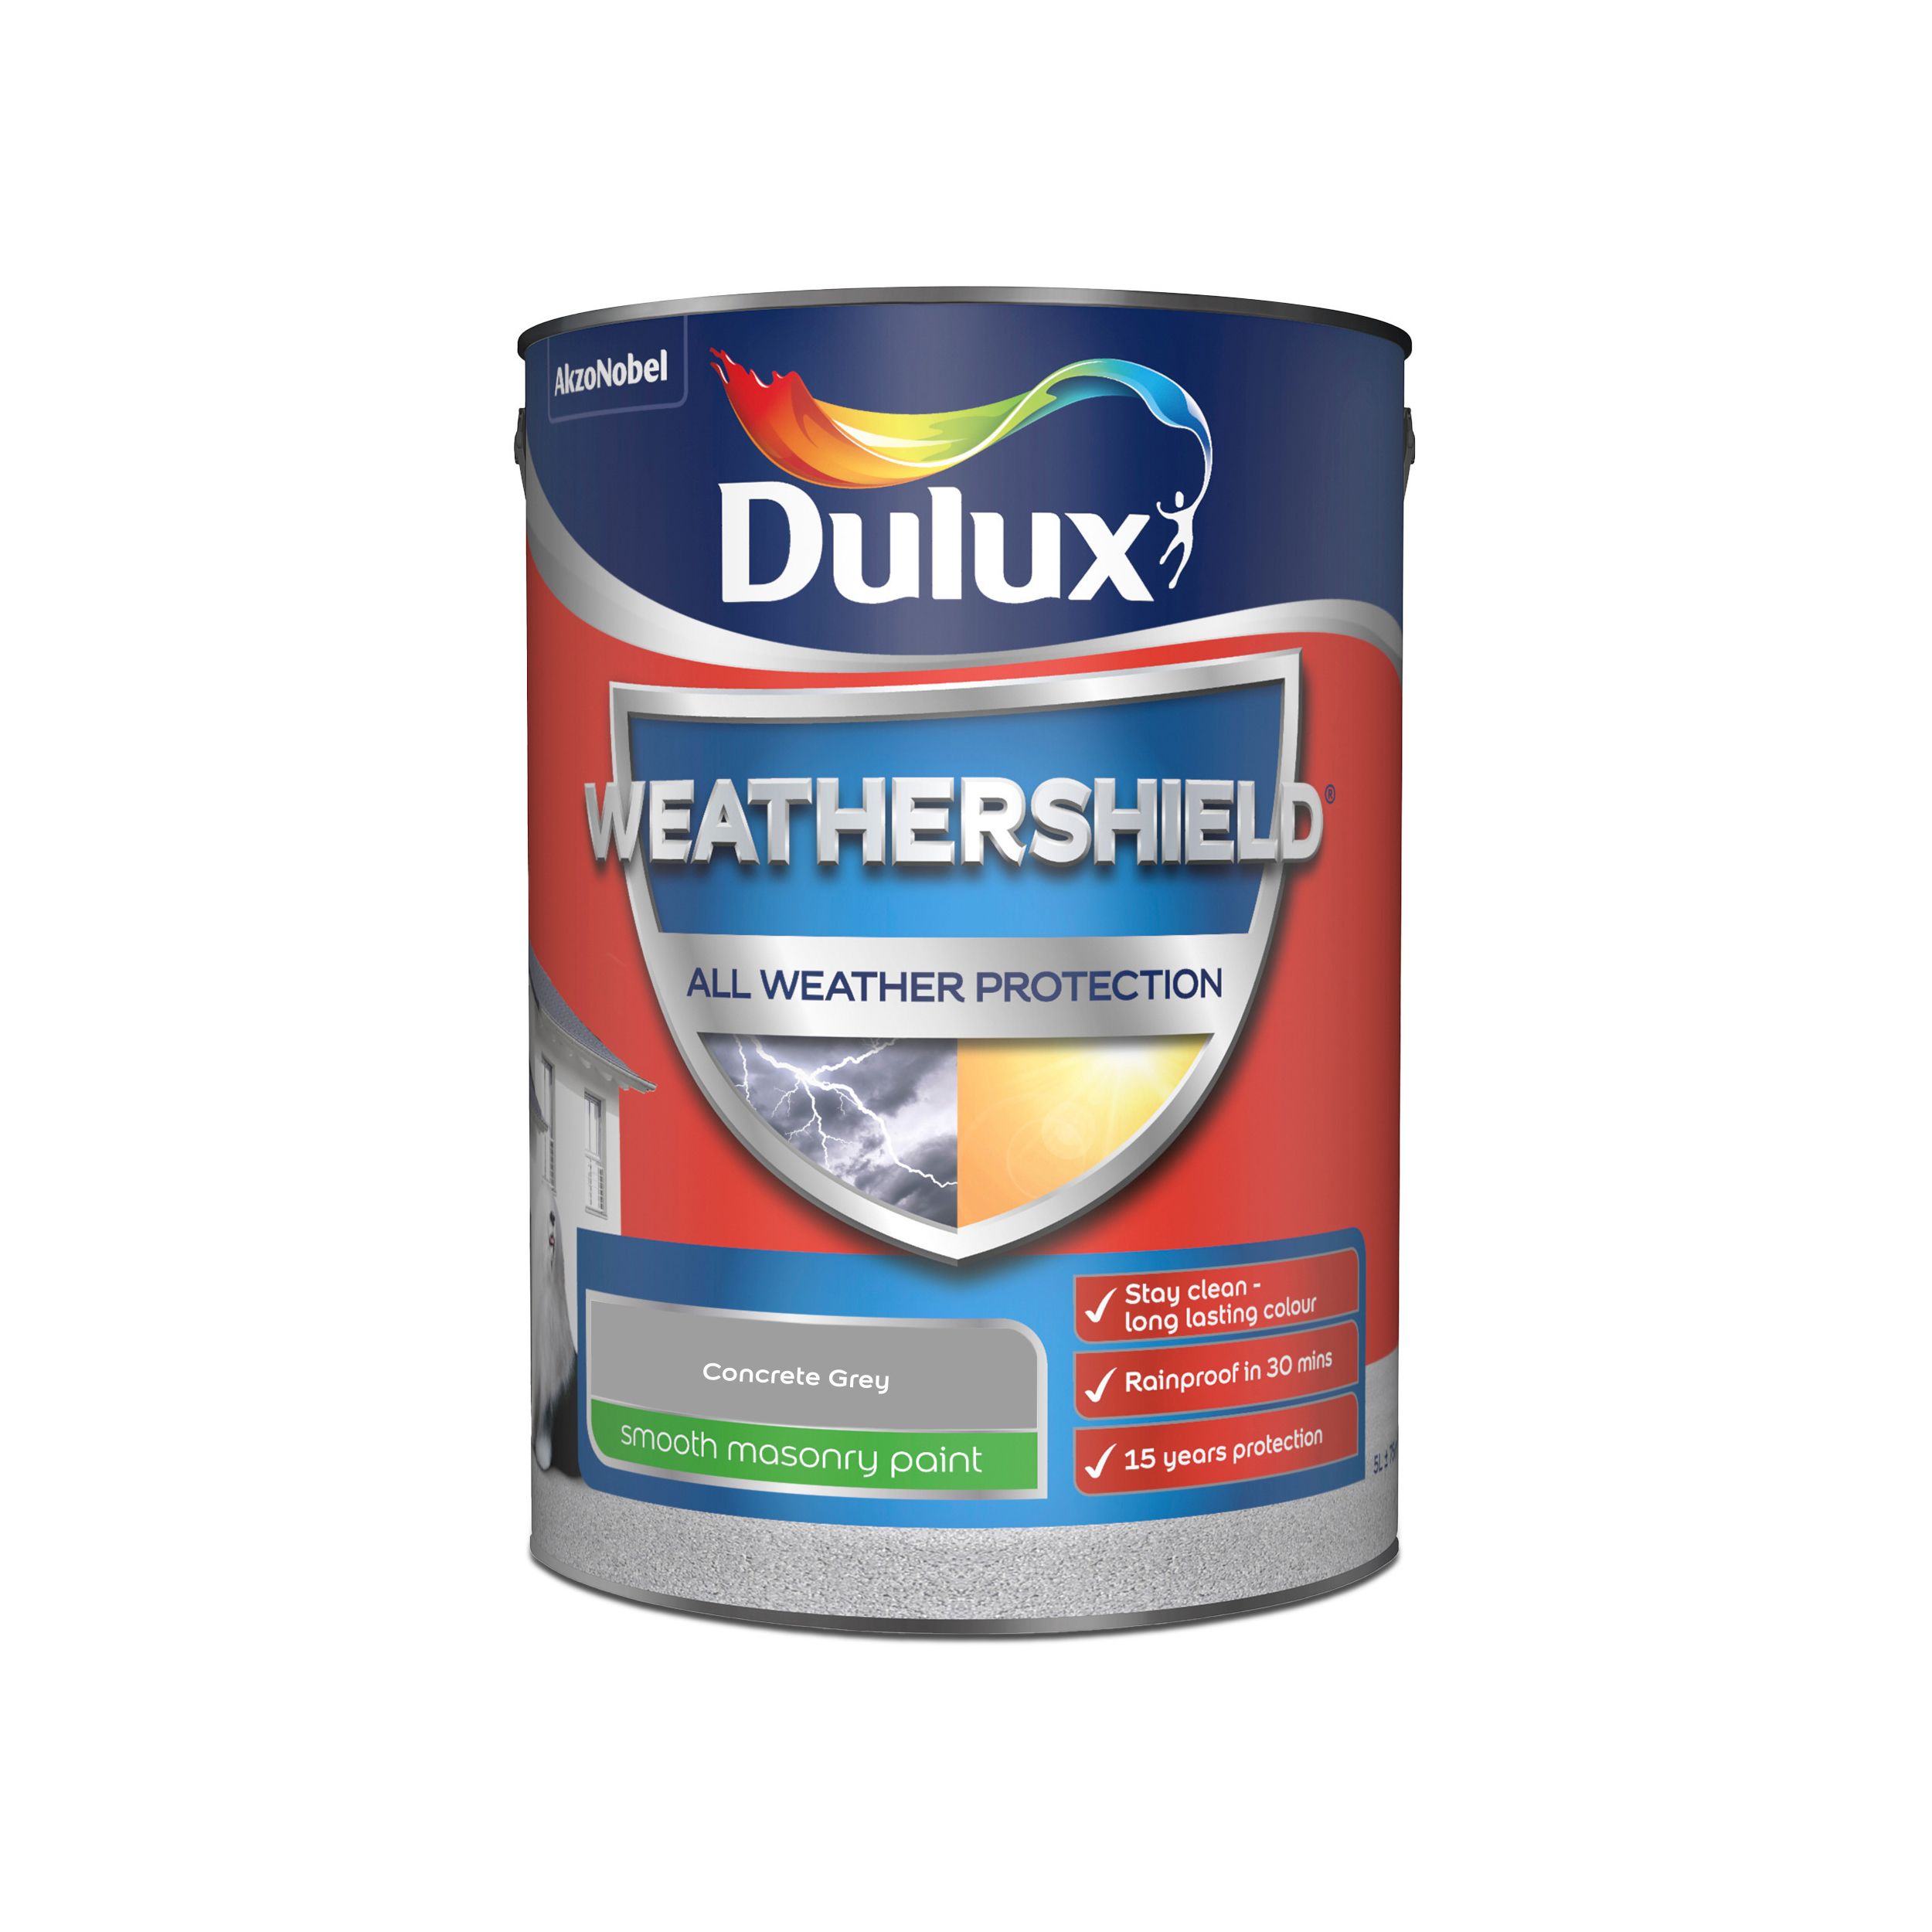 Dulux Weathershield Concrete grey Smooth Matt Masonry paint, 5L